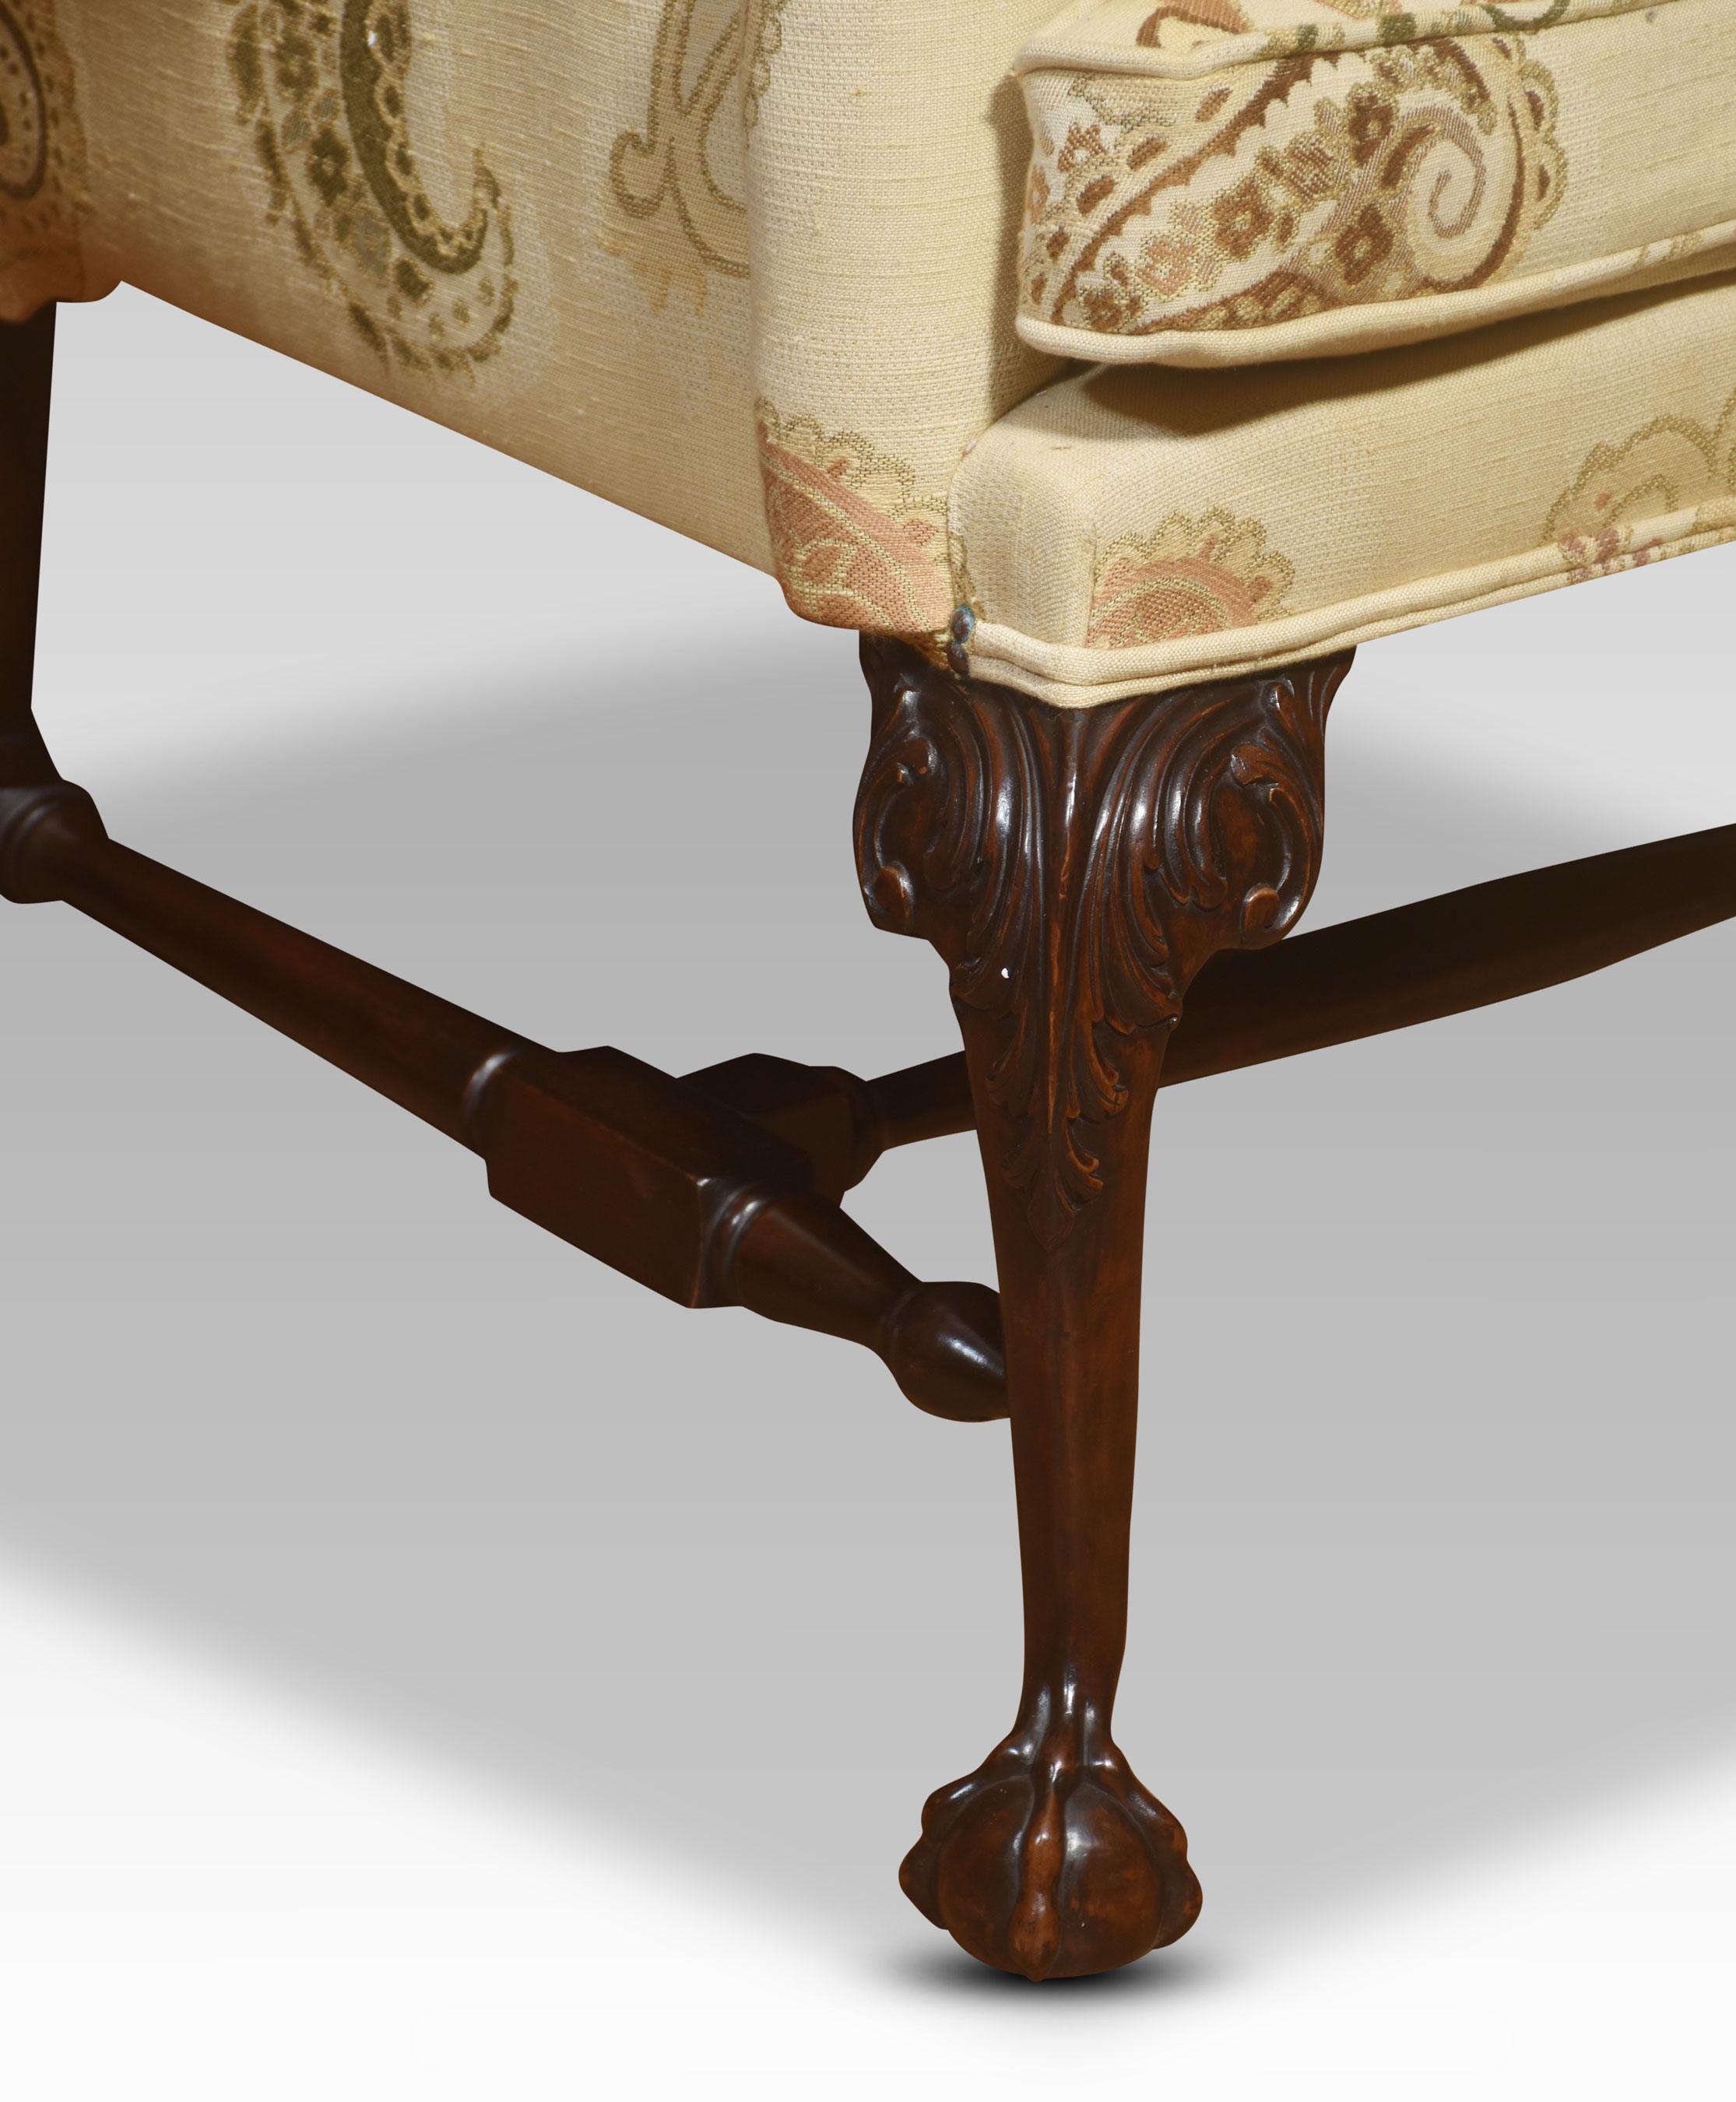 Sessel im Stil von George II. Die geformte Rückenlehne hat ausgebreitete Arme, die auf geschnitzten Kabriolettbeinen ruhen, die in Klauen- und Kugelfüßen enden, die durch gedrechselte Bahren verbunden sind.
Abmessungen
Höhe 48 Zoll Höhe zum Sitz